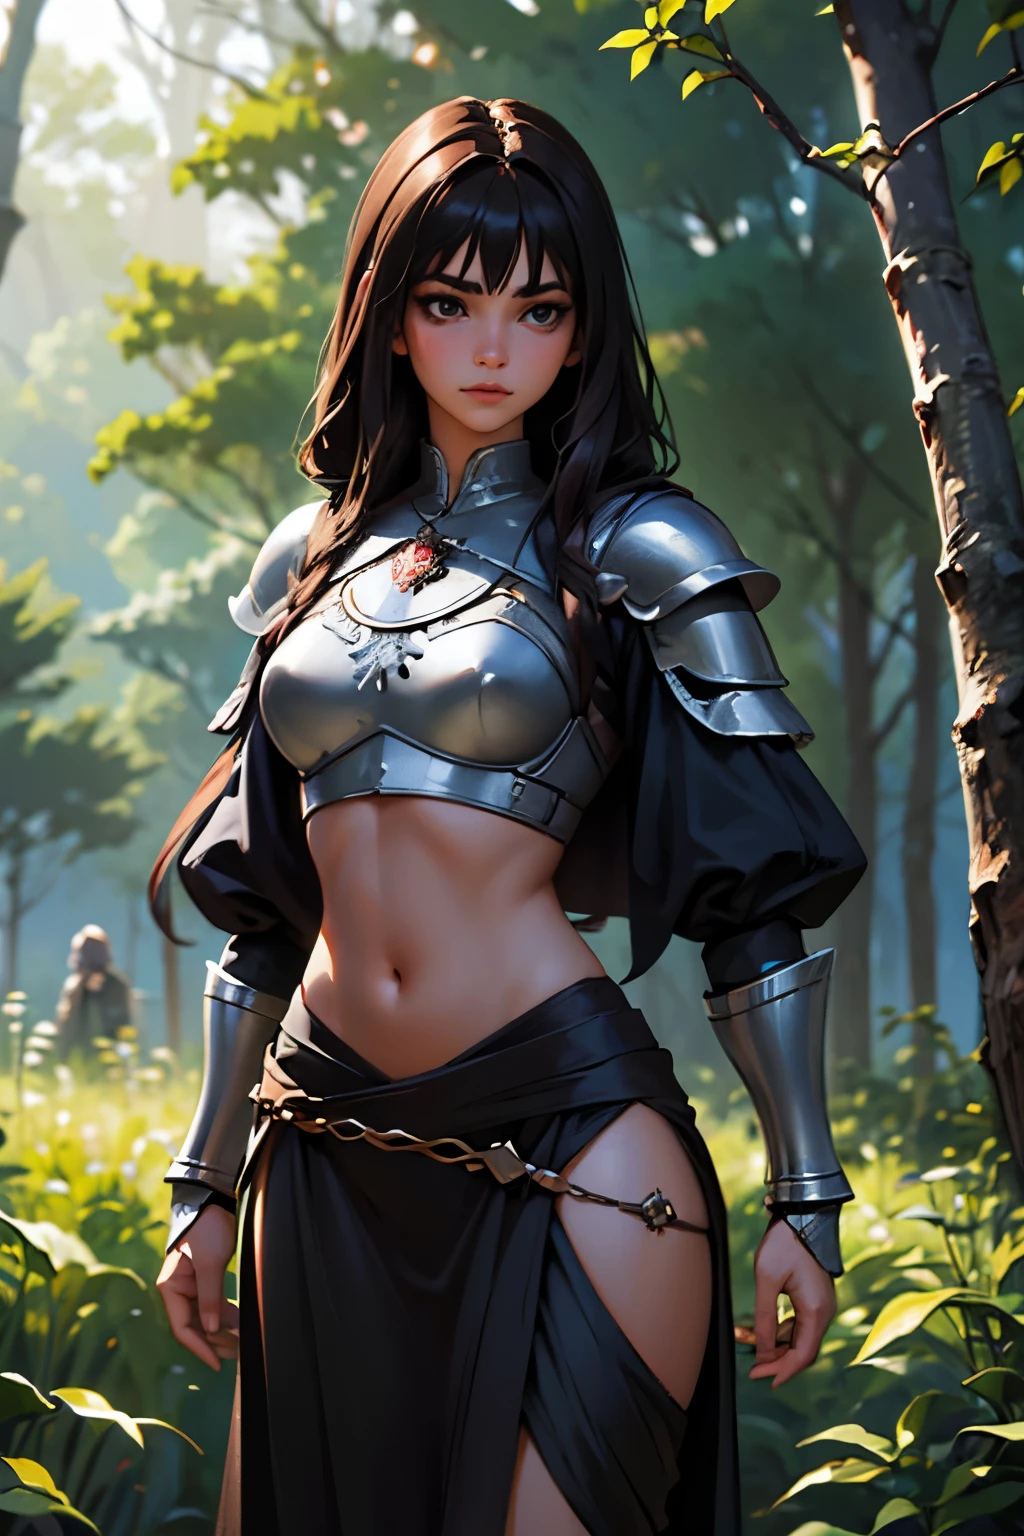 ((超写实风格)), (1女孩, 印度, 美丽的黑发, 窈窕美丽的身體, 穿着中世纪的轻型黑色盔甲), (在森林里)